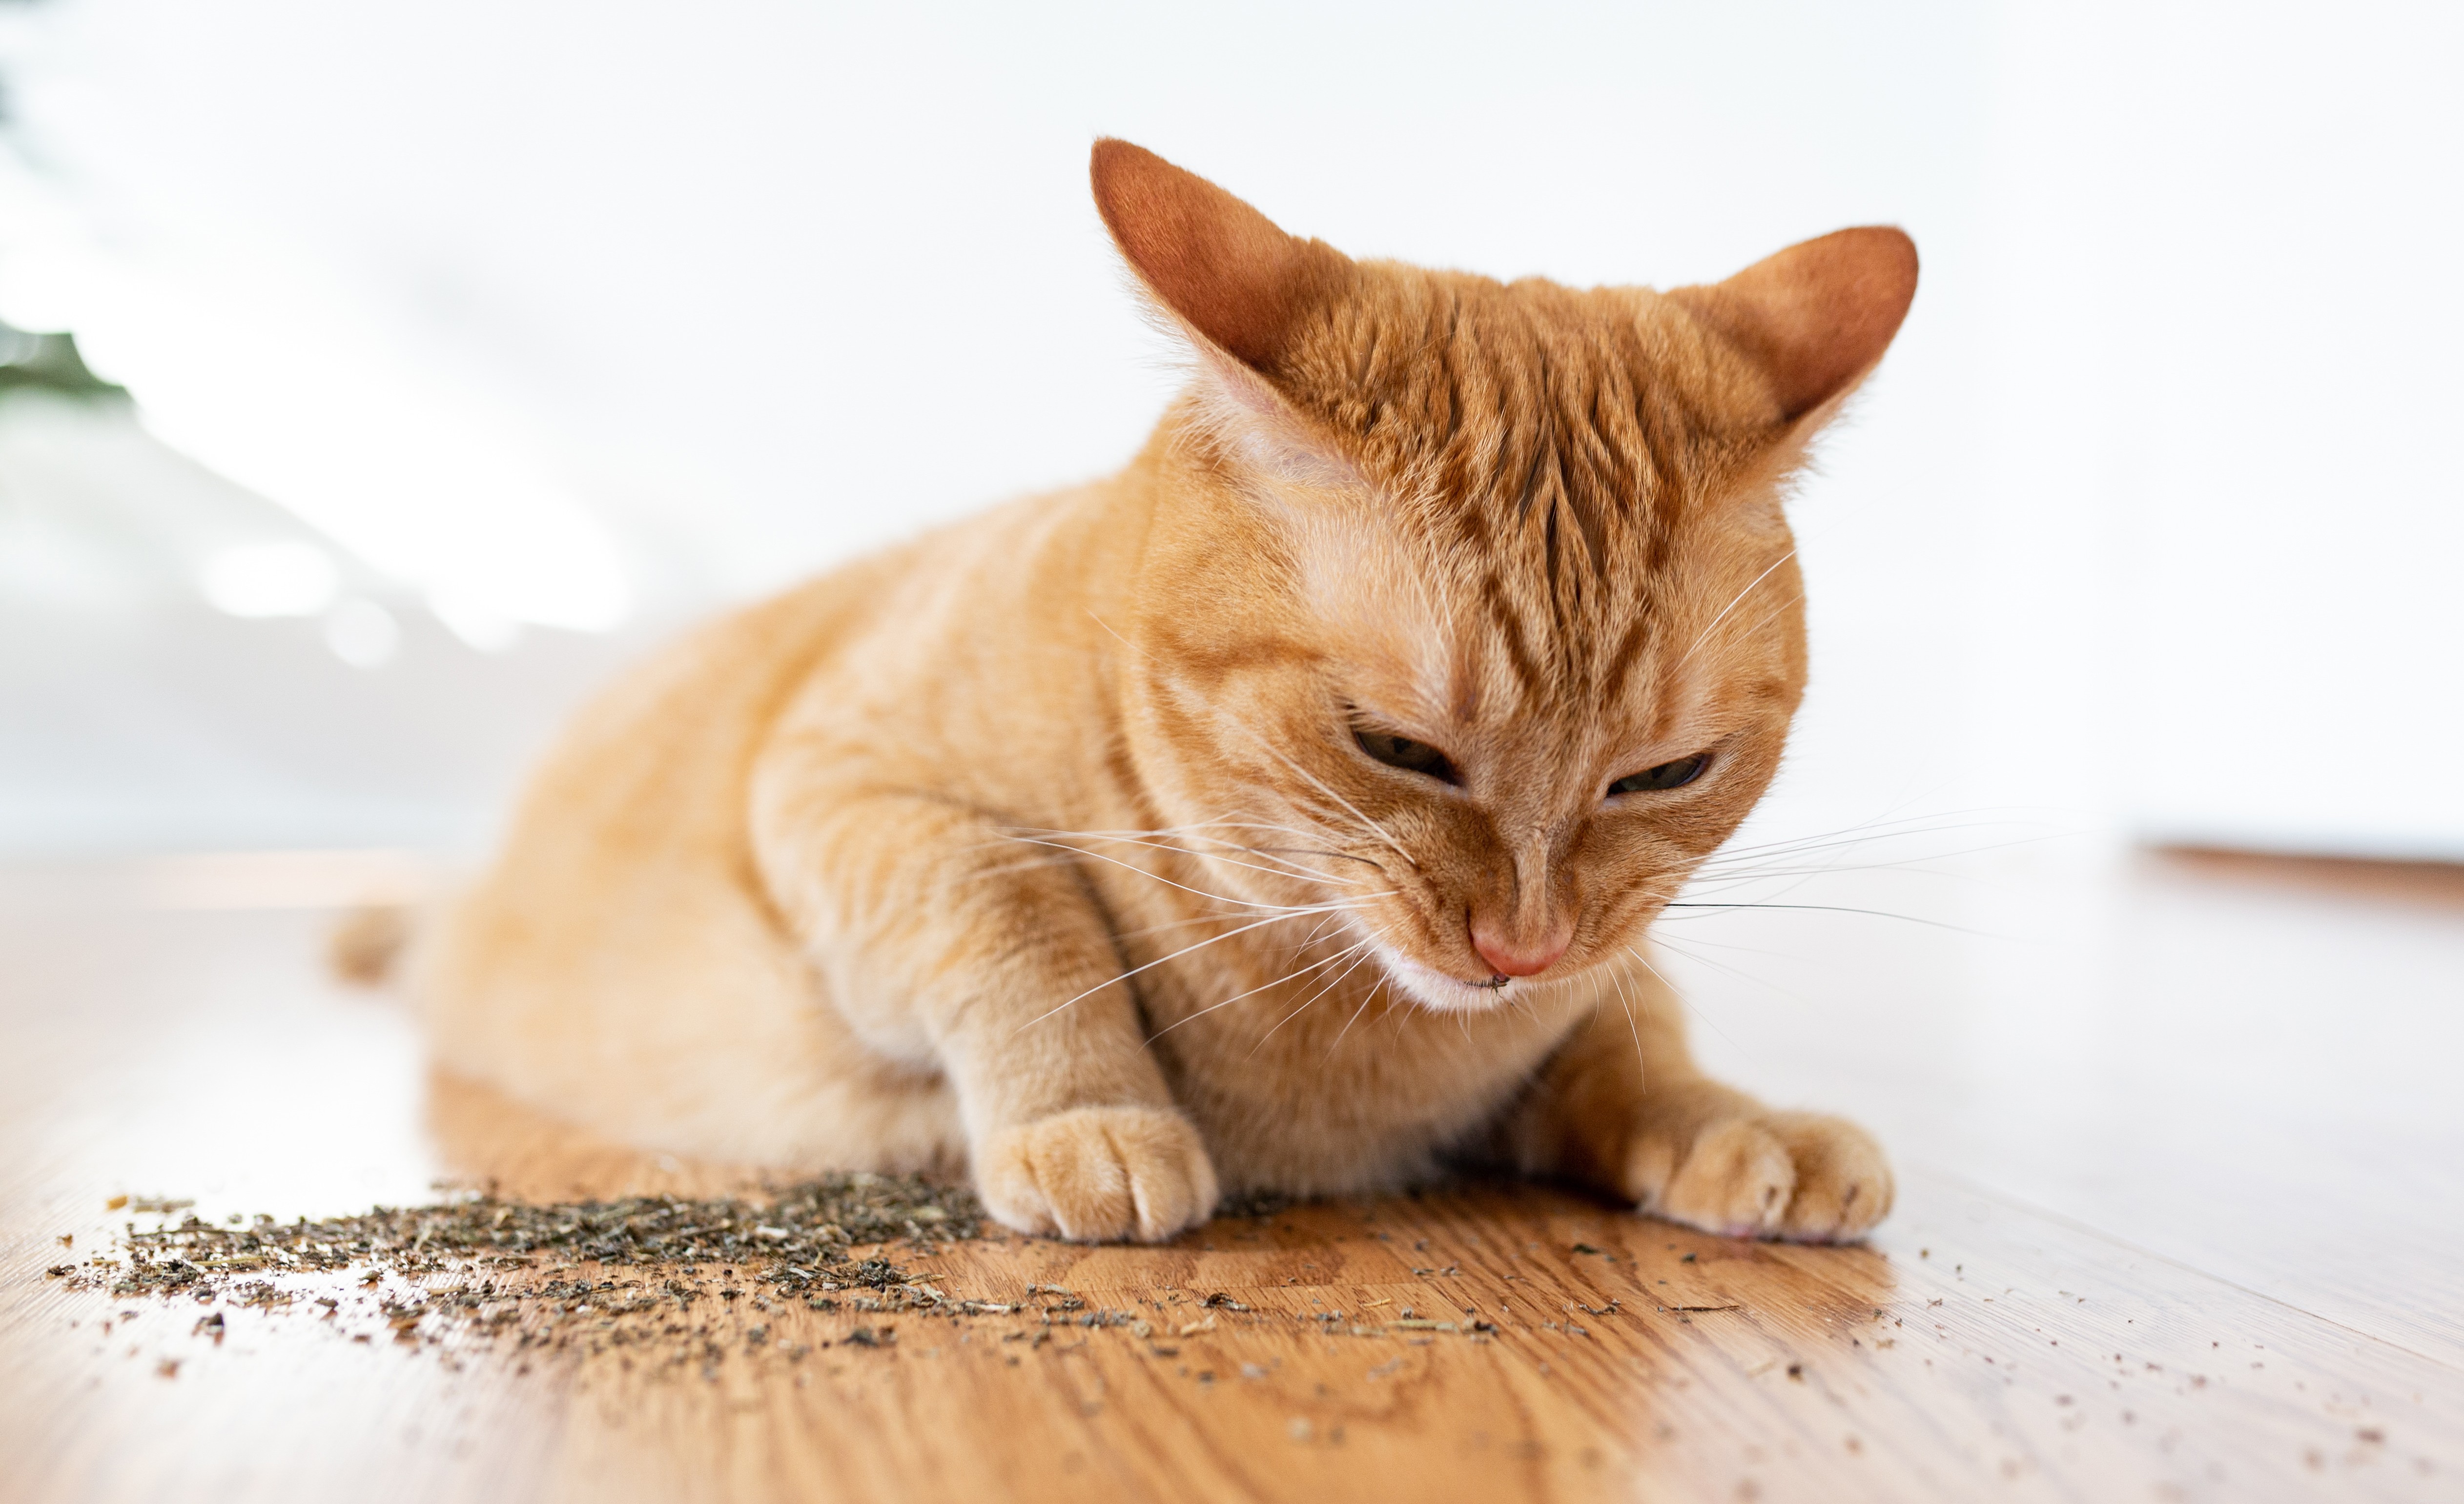 Co je Catnip a jak ovlivňuje vaši kočku?